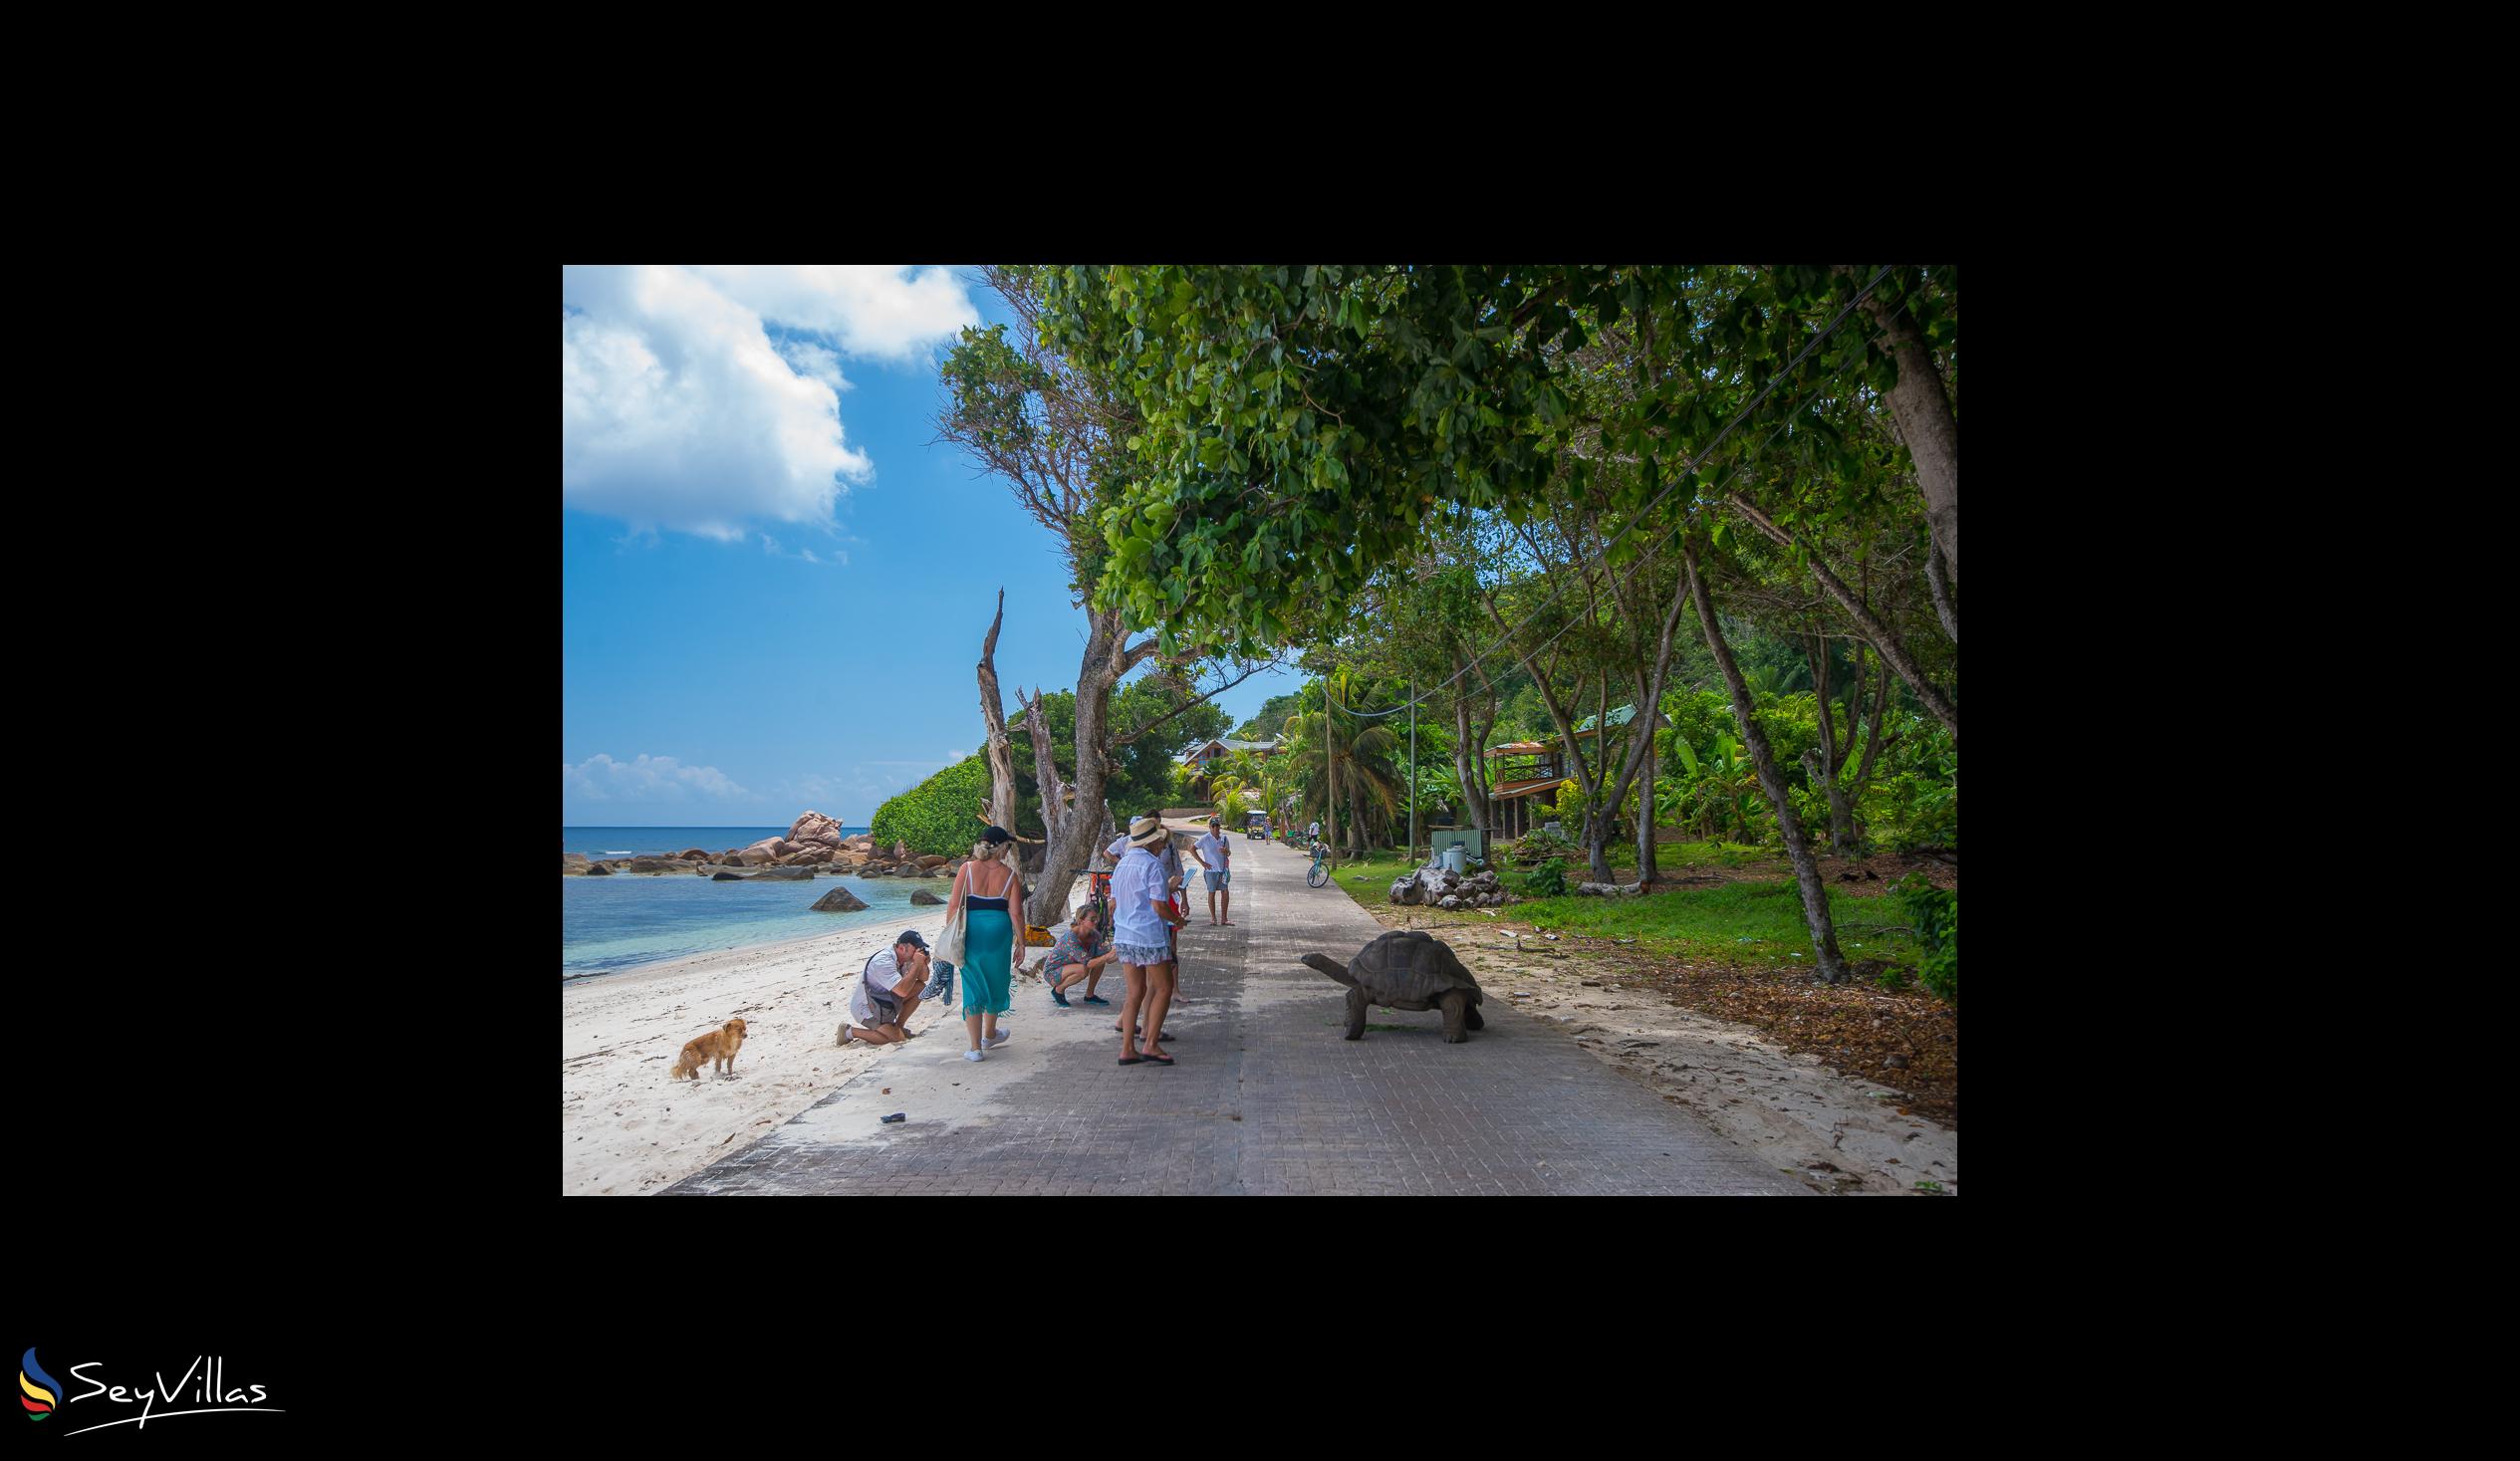 Photo 62: Le Nautique Luxury Waterfront Hotel - Location - La Digue (Seychelles)